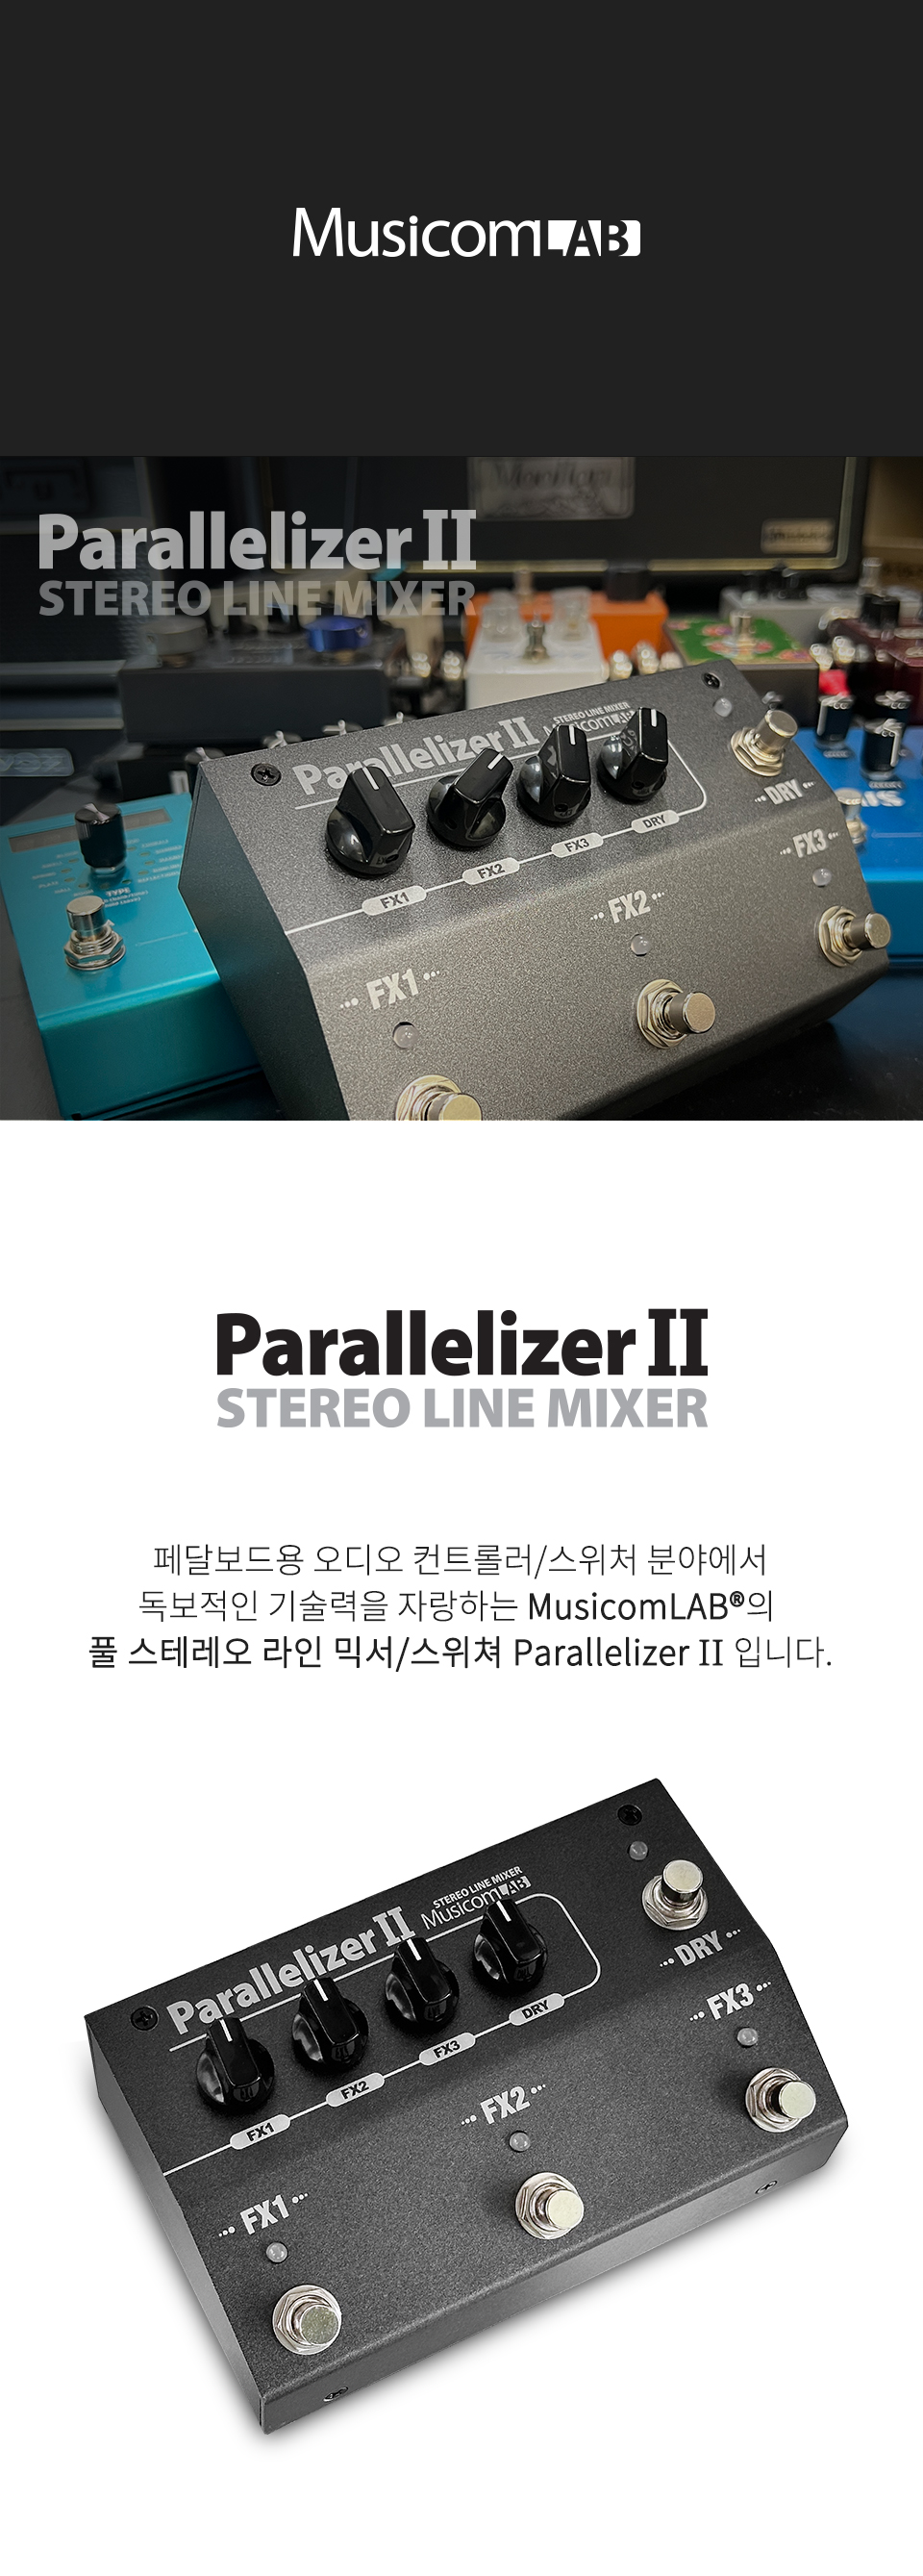 parallelizerII_01_131007_114848.jpg